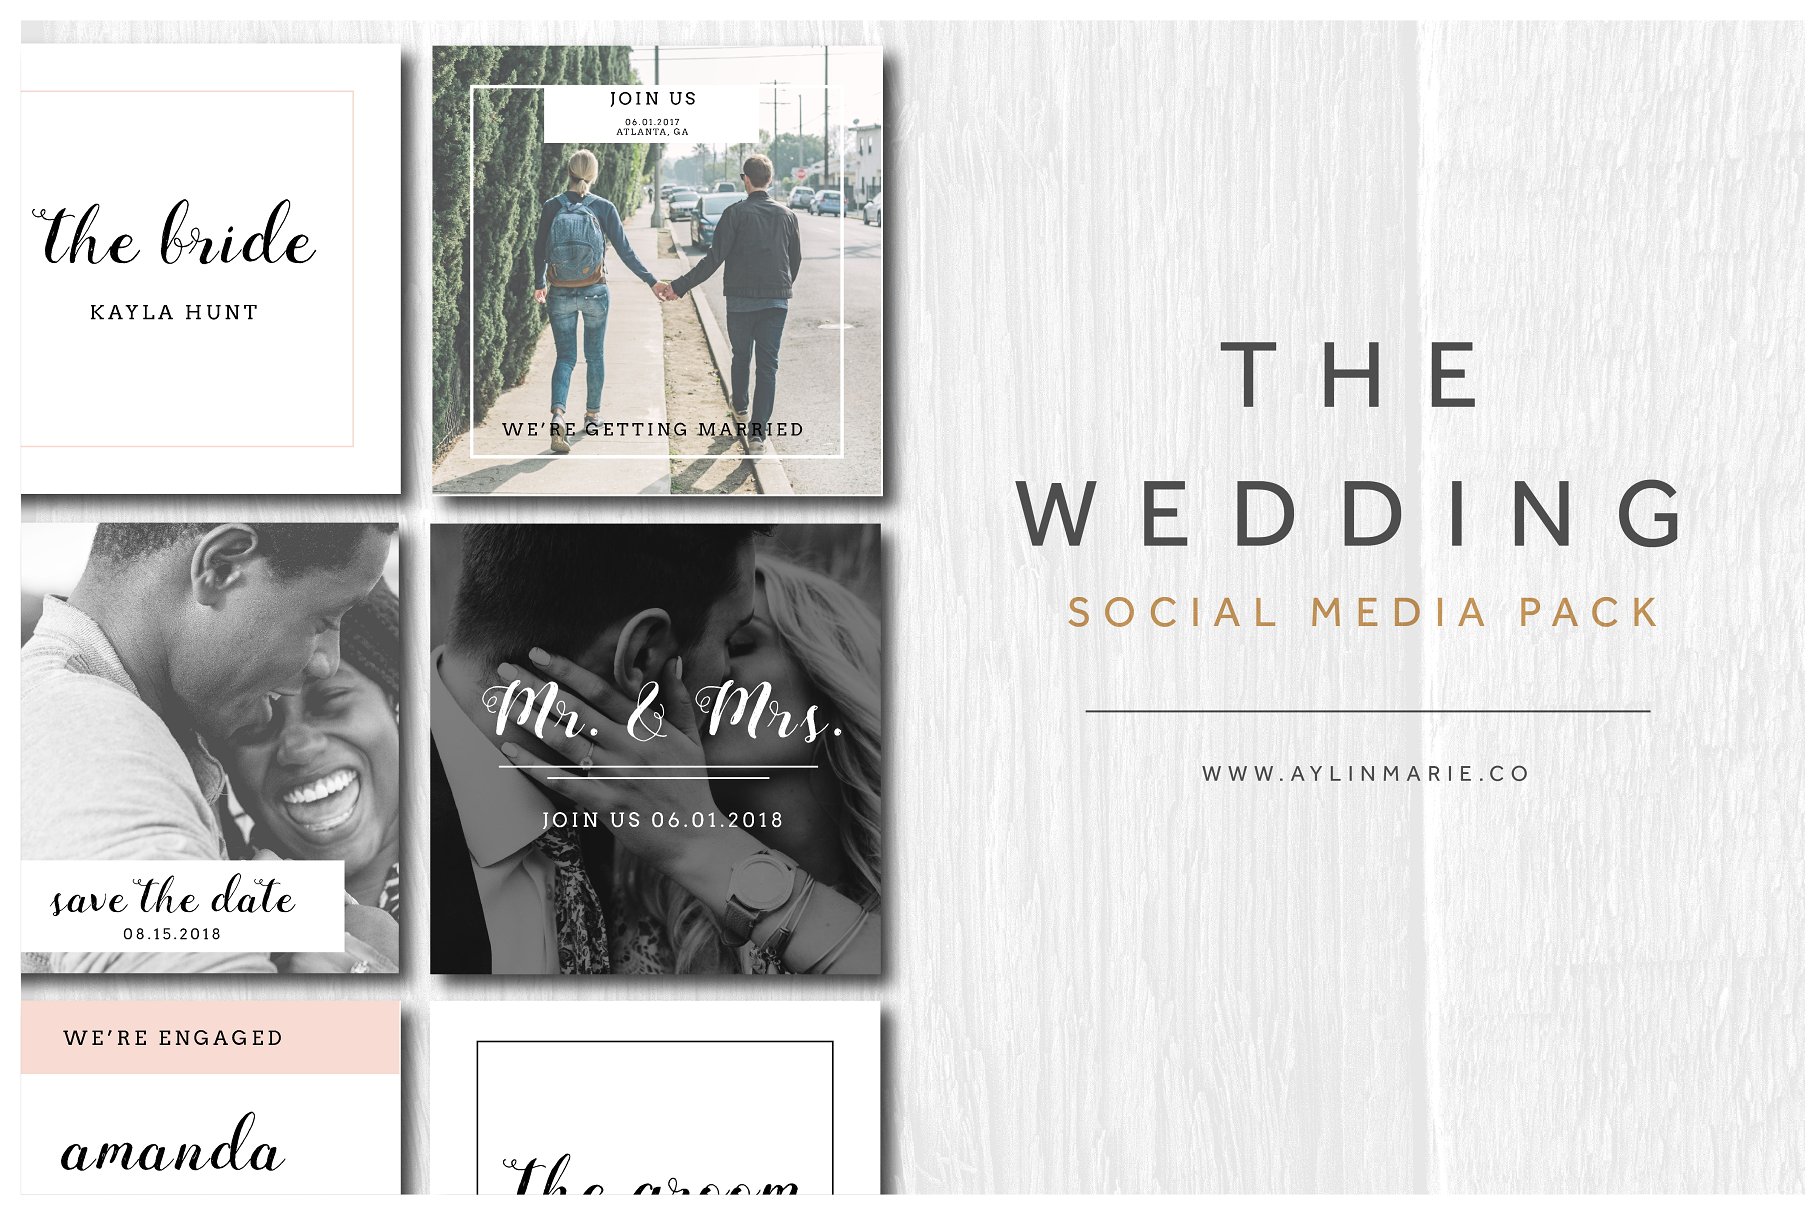 婚礼婚庆主题社交媒体贴图素材包 The Wedding – Social Media Pack插图